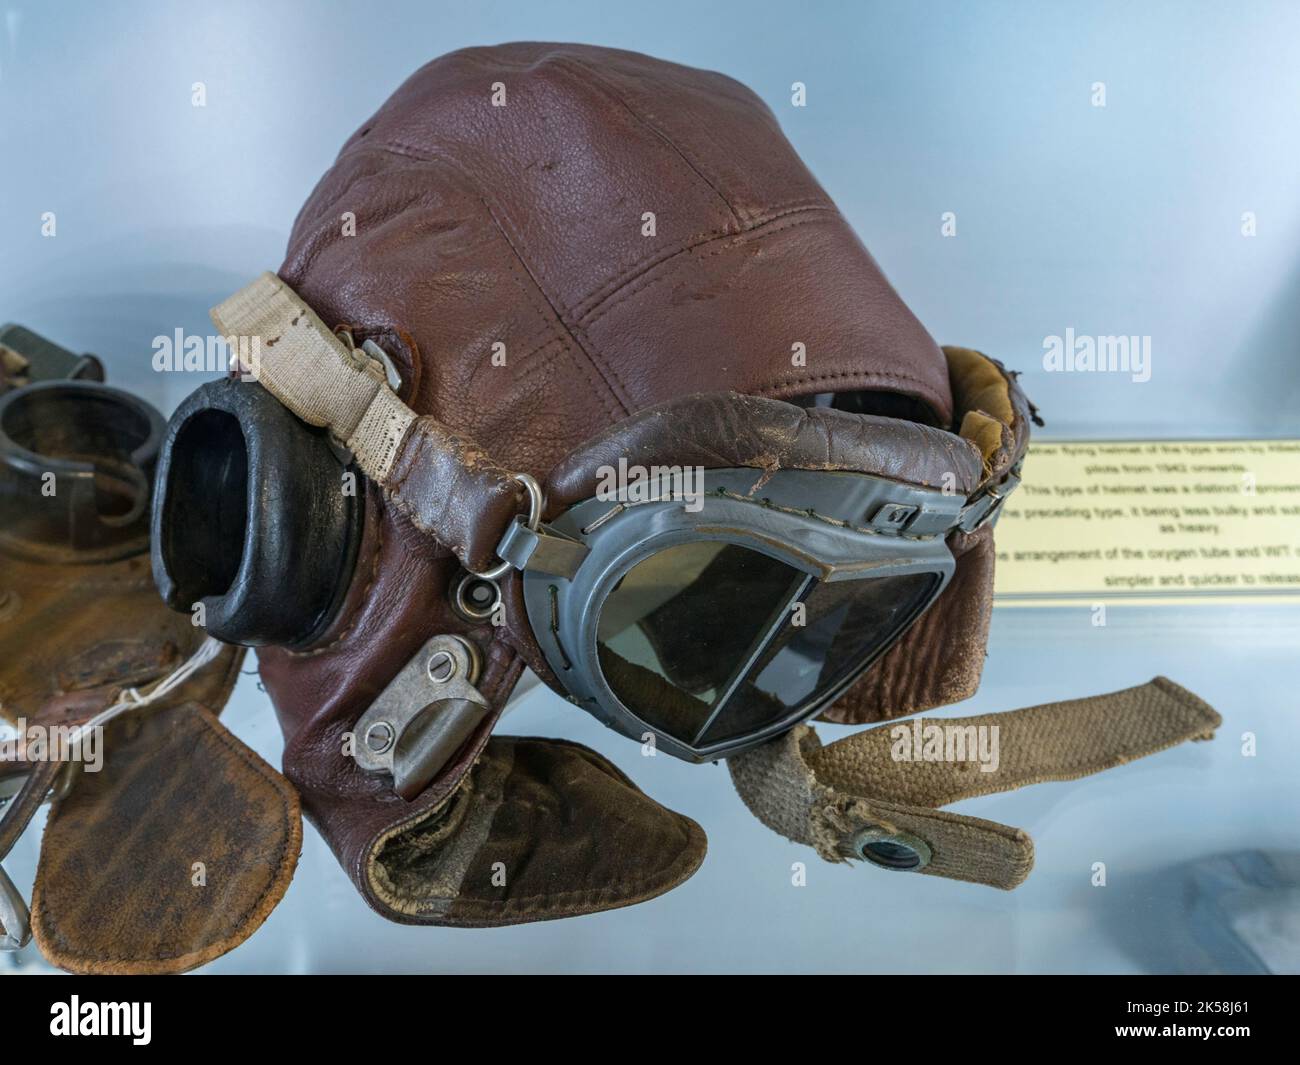 Un casque volant en cuir Mk IV du type utilisé par les pilotes de chasse alliés de la Seconde Guerre mondiale après 1942, Spitfire et Hurricane Memorial Museum, Ramsgate, Kent, Royaume-Uni. Banque D'Images